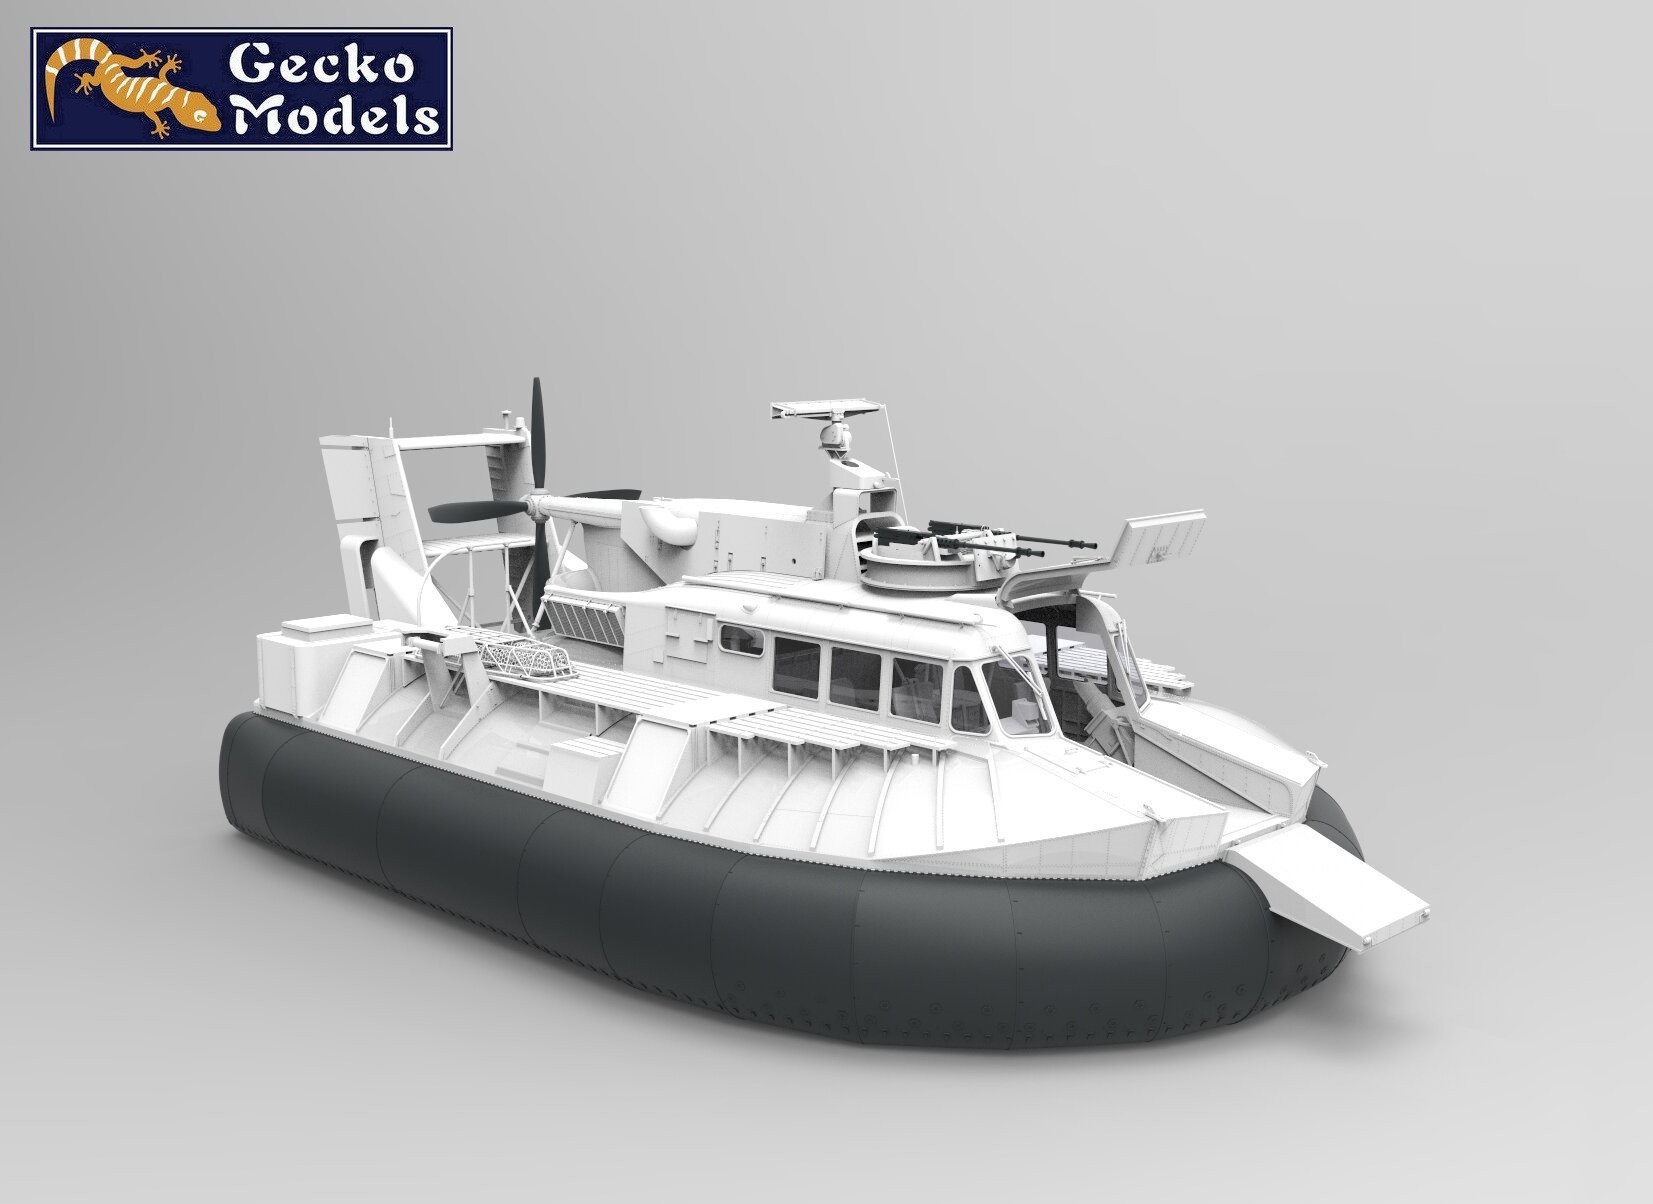 Gecko Models Announces Unique 1/35 Scale SK-5 PACV Model CAD-1